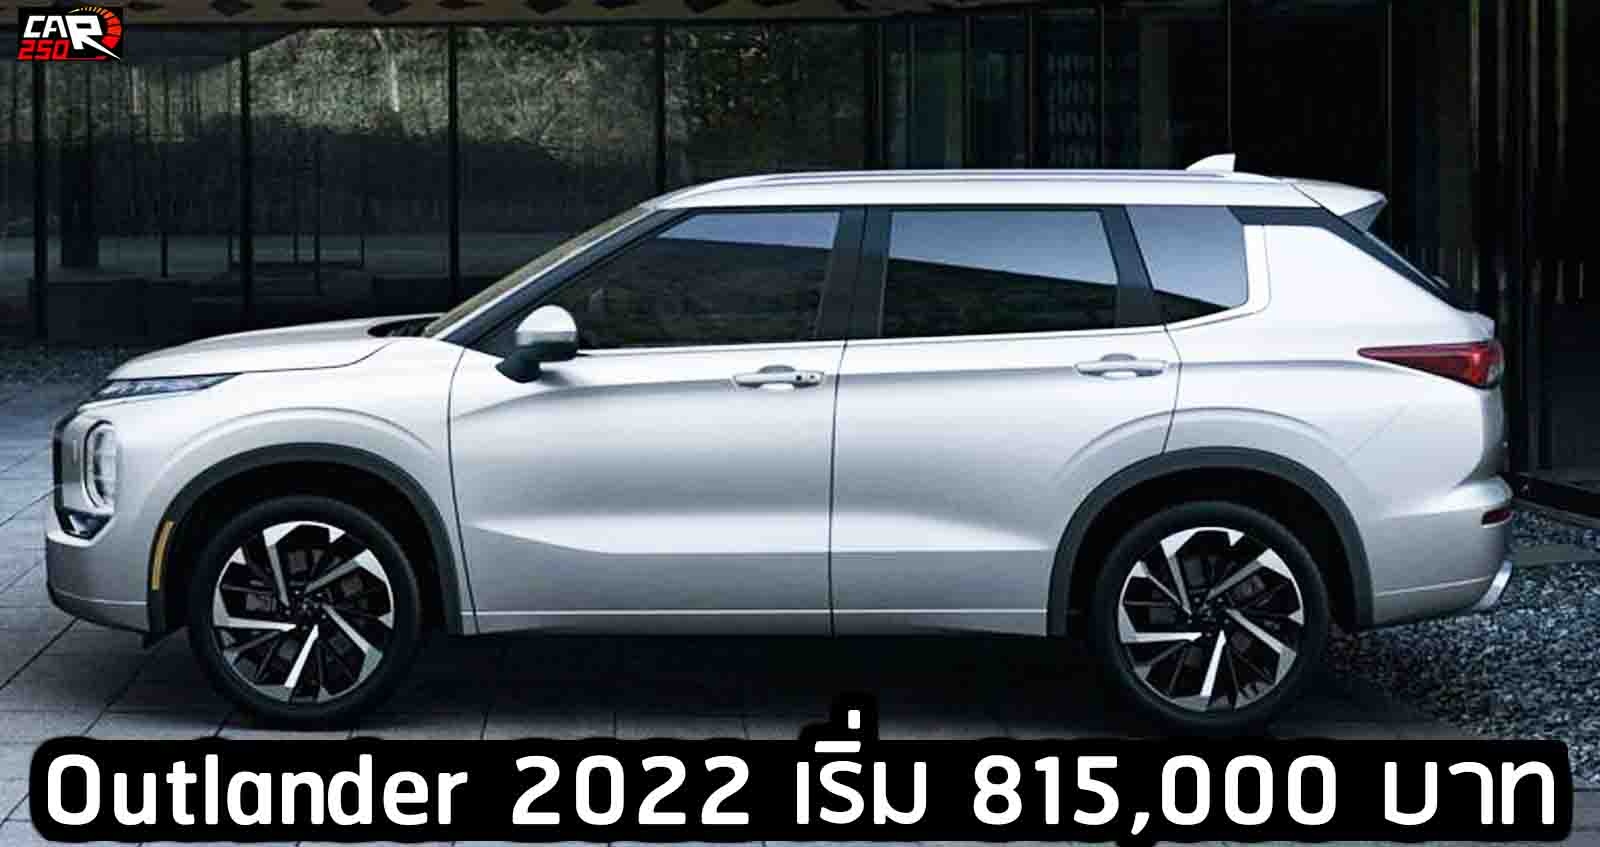 เผยราคา Mitsubishi Outlander 2022 เริ่ม 815,000 บาท ก่อนจำหน่าย เมษายน ในสหรัฐฯ